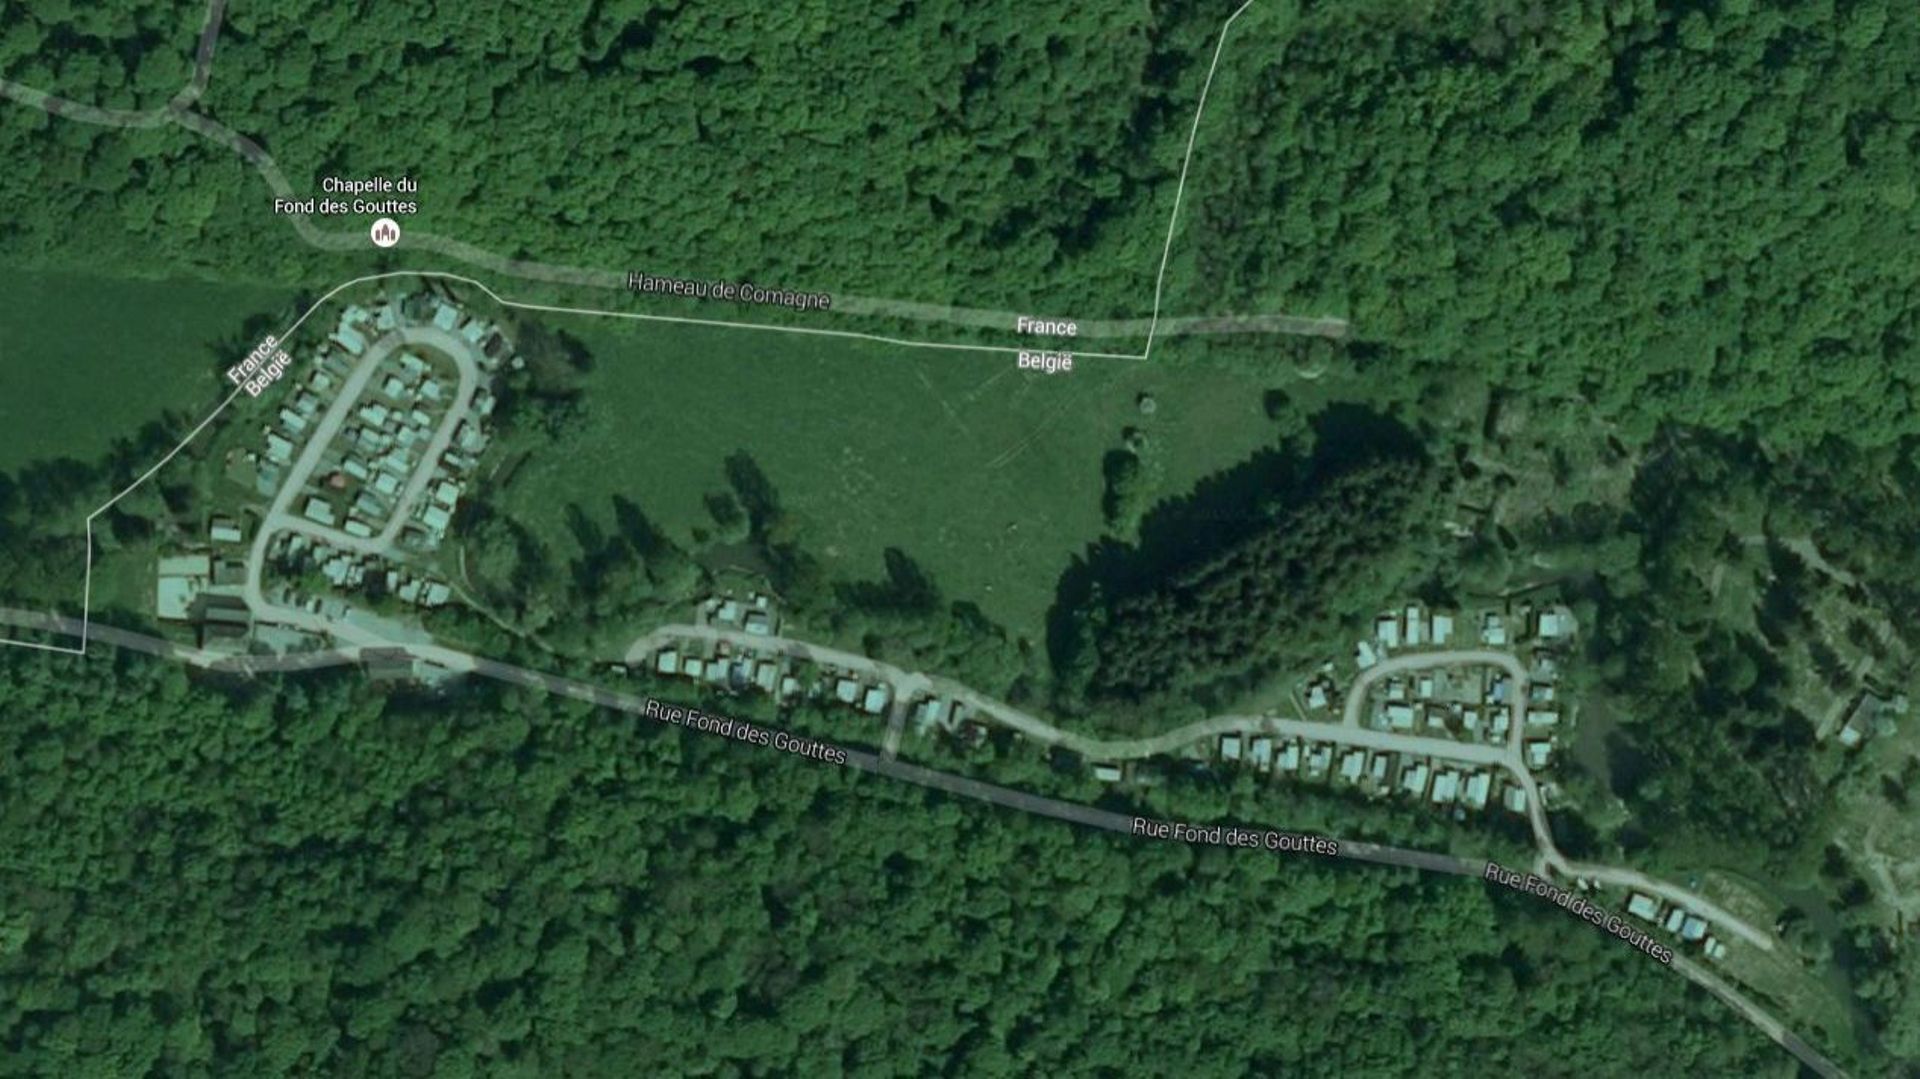 Le site du Fonds des Gouttes à Leugnies est un ancien camping dont voici une vue satellite